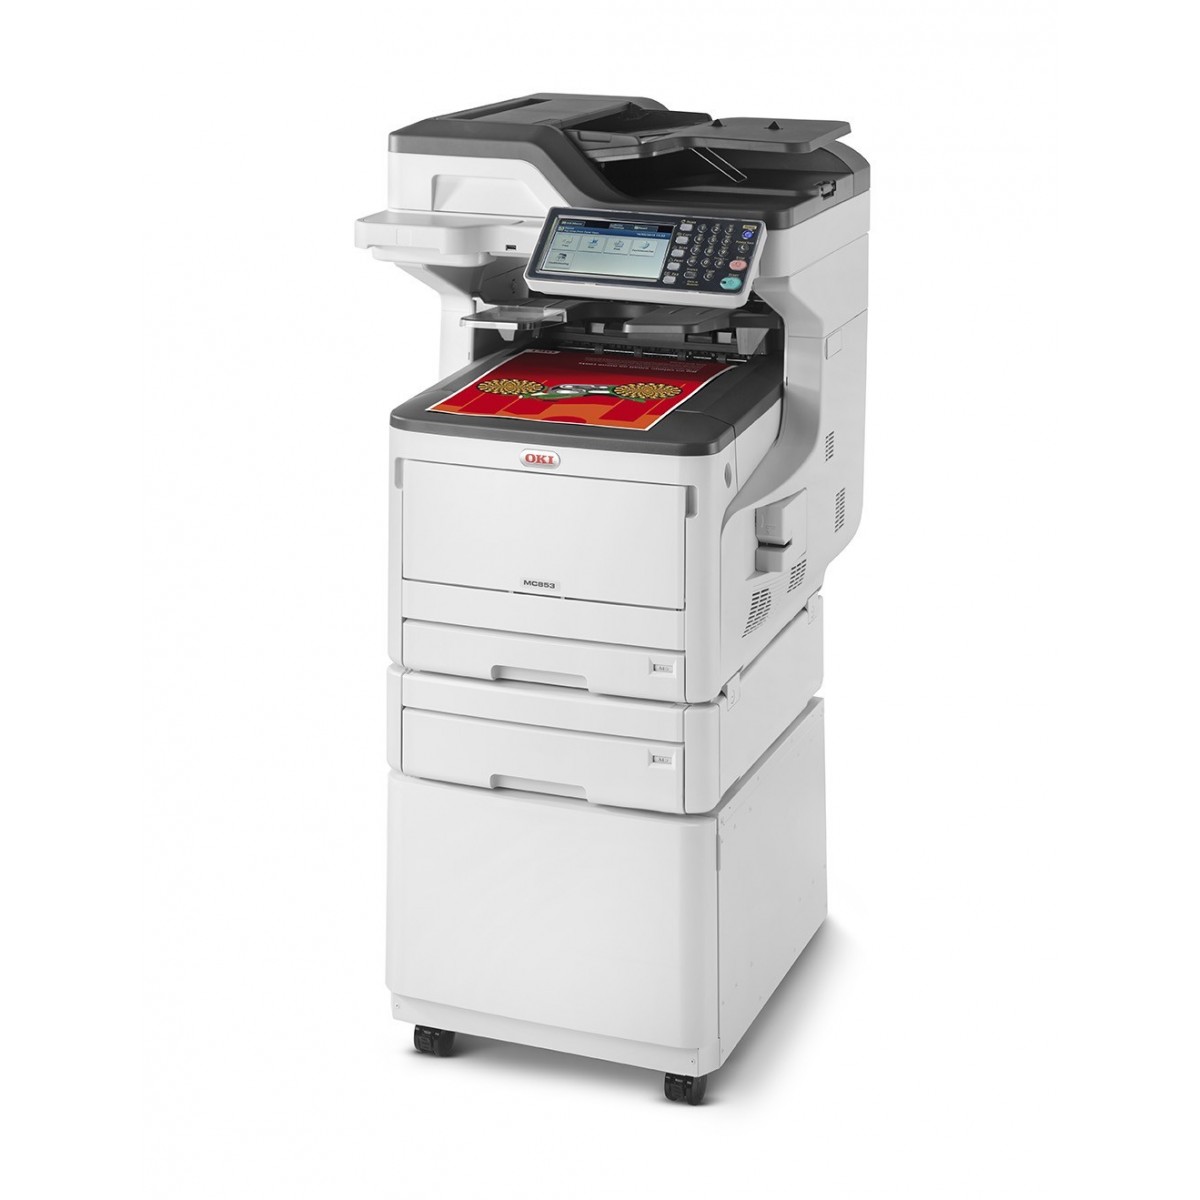 OKI MC853dnct - LED - Colour printing - 1200 x 600 DPI - Colour copying - A3 - Black - White